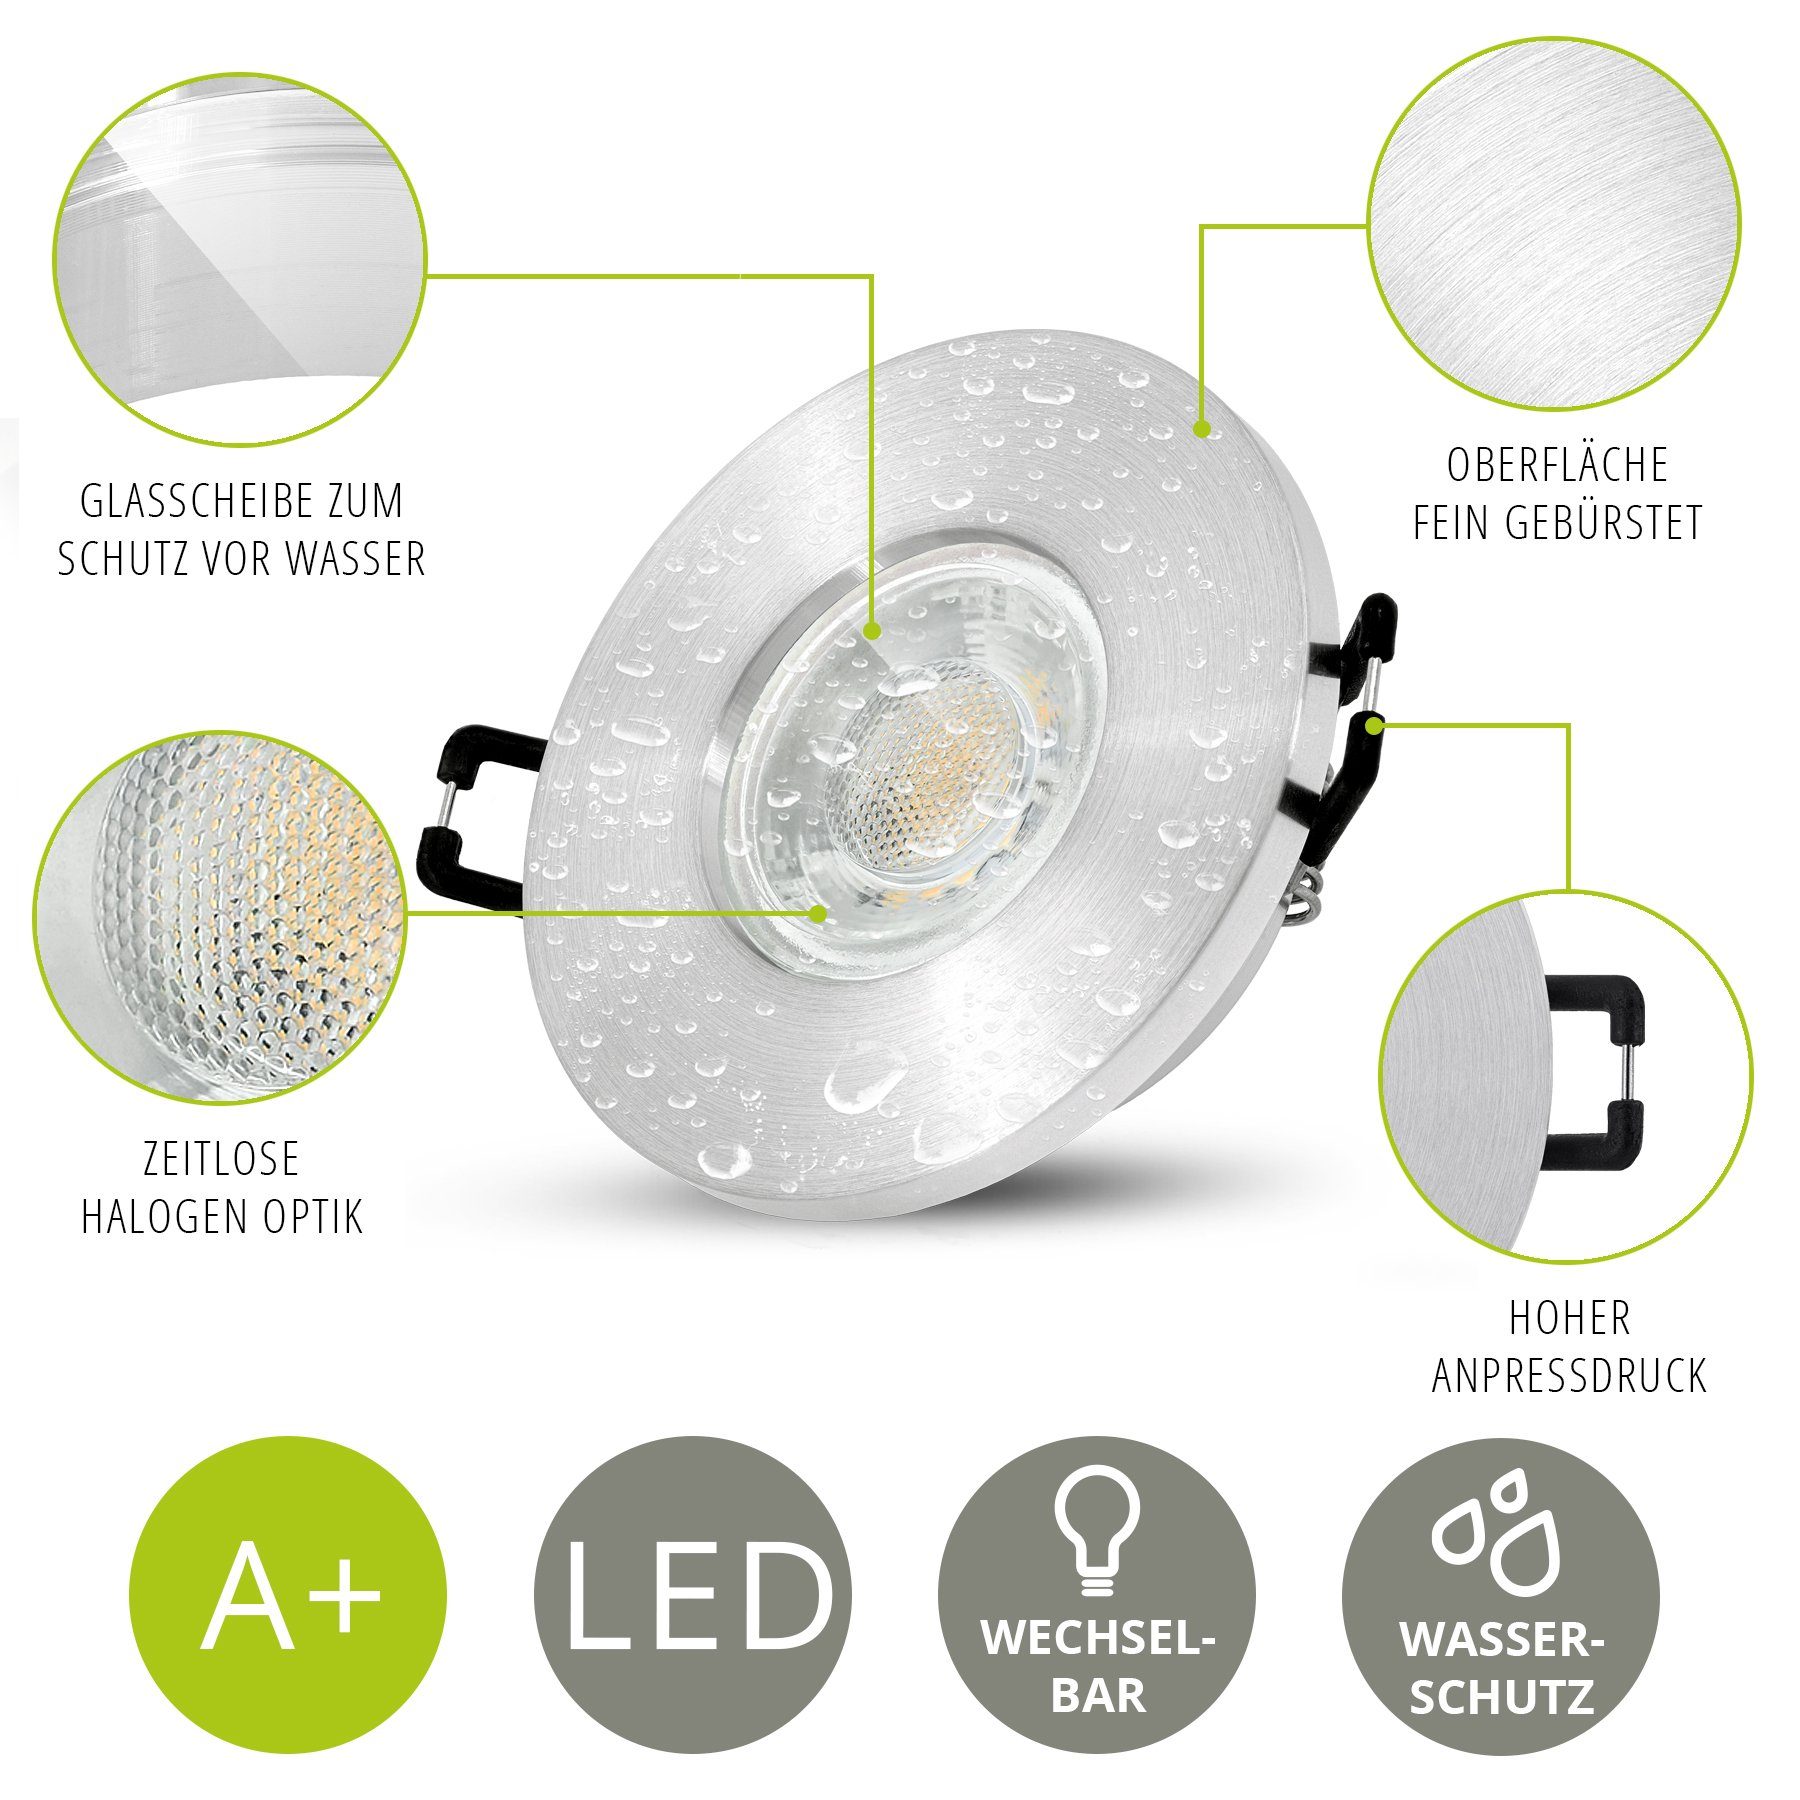 linovum LED inklusive 230V, Leuchtmittel GU10 neutralweiss IP65 Leuchtmittel LED Set Einbaustrahler 10er inklusive, 3W Einbaustrahler